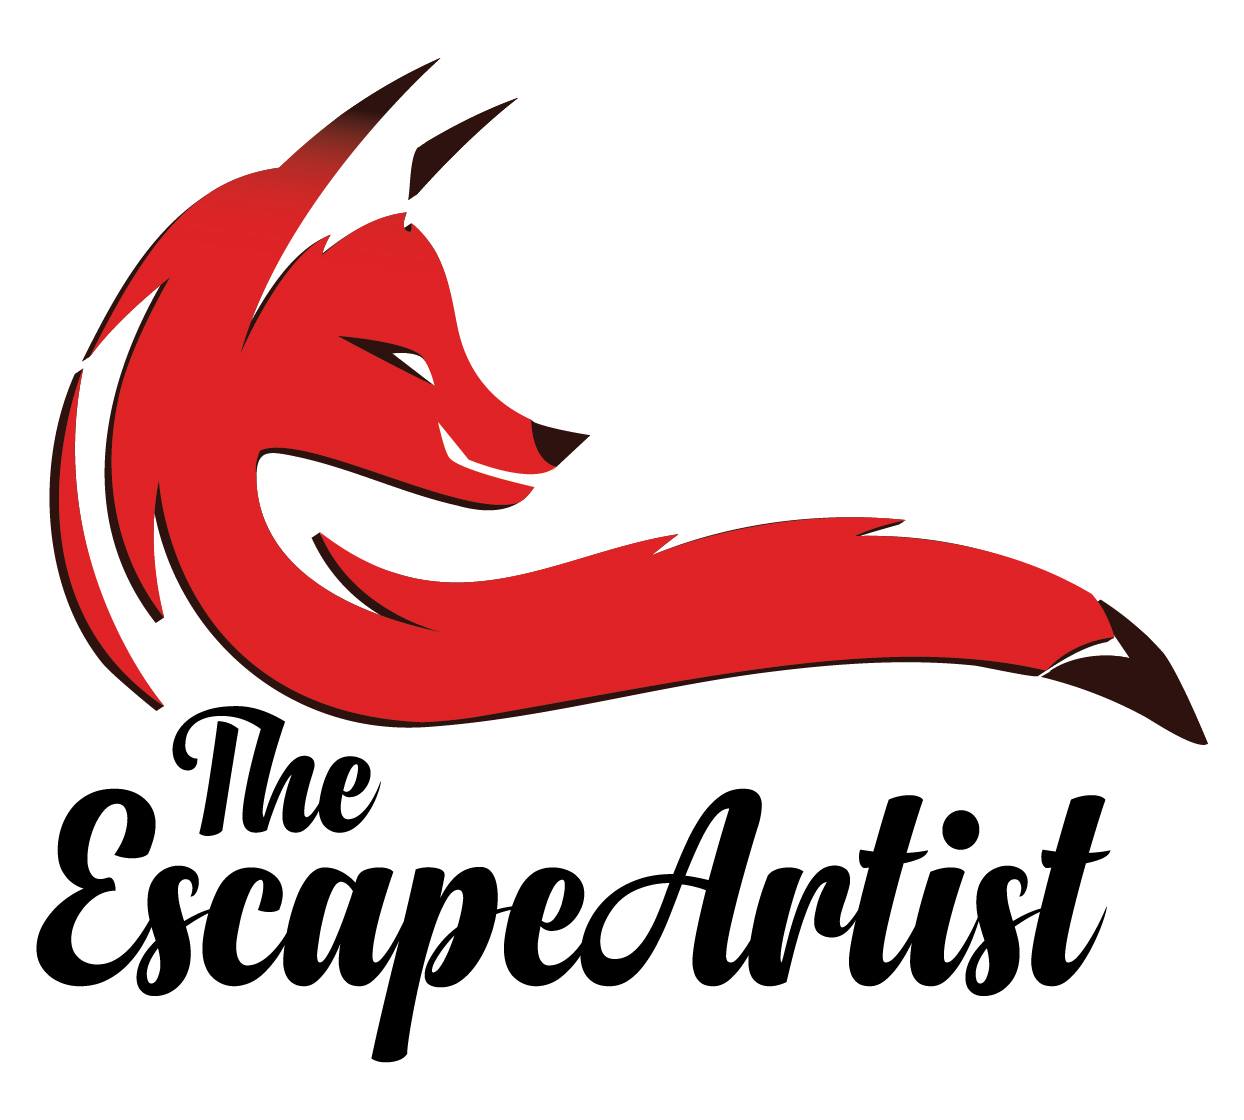 The escape Artist